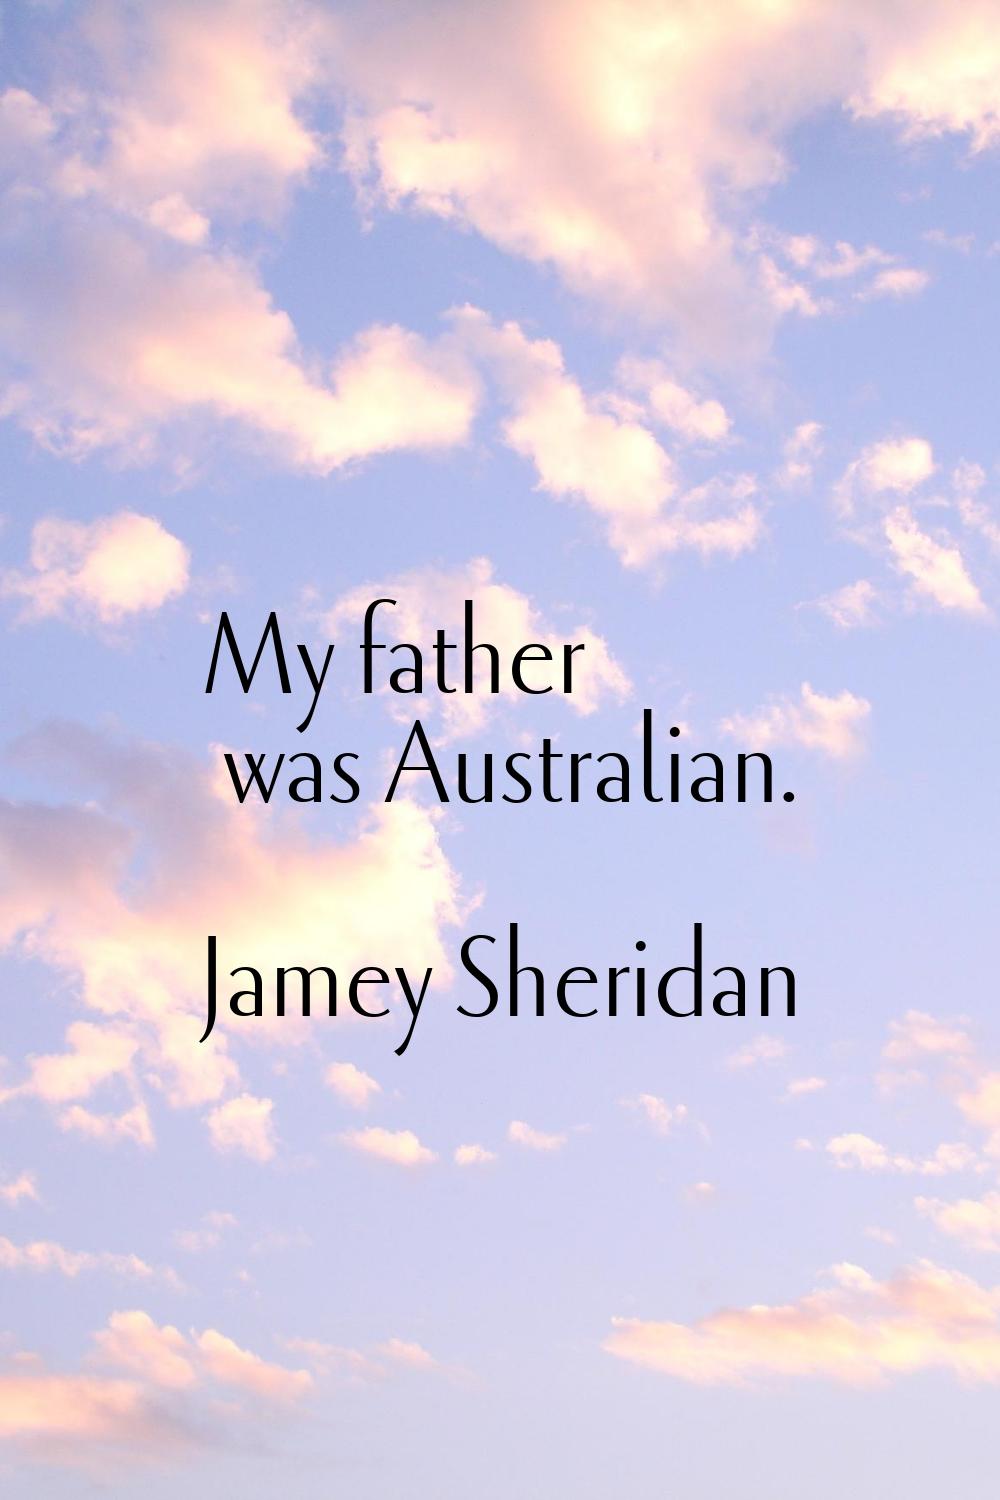 My father was Australian.